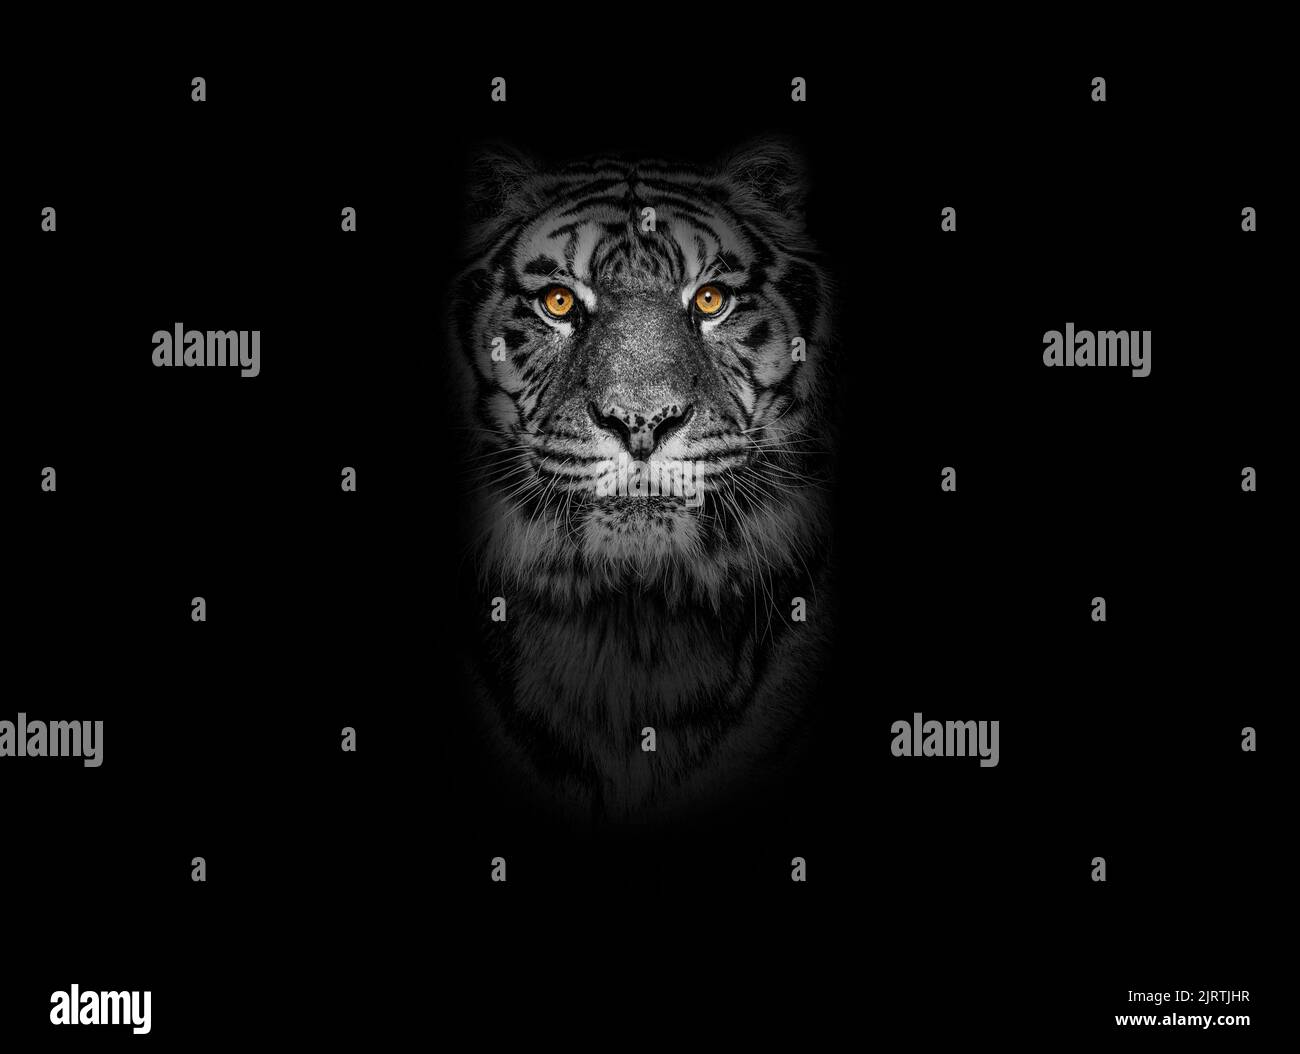 Ritratto in bianco e nero di una Tigre guardando la fotocamera su sfondo nero, occhi gialli Foto Stock